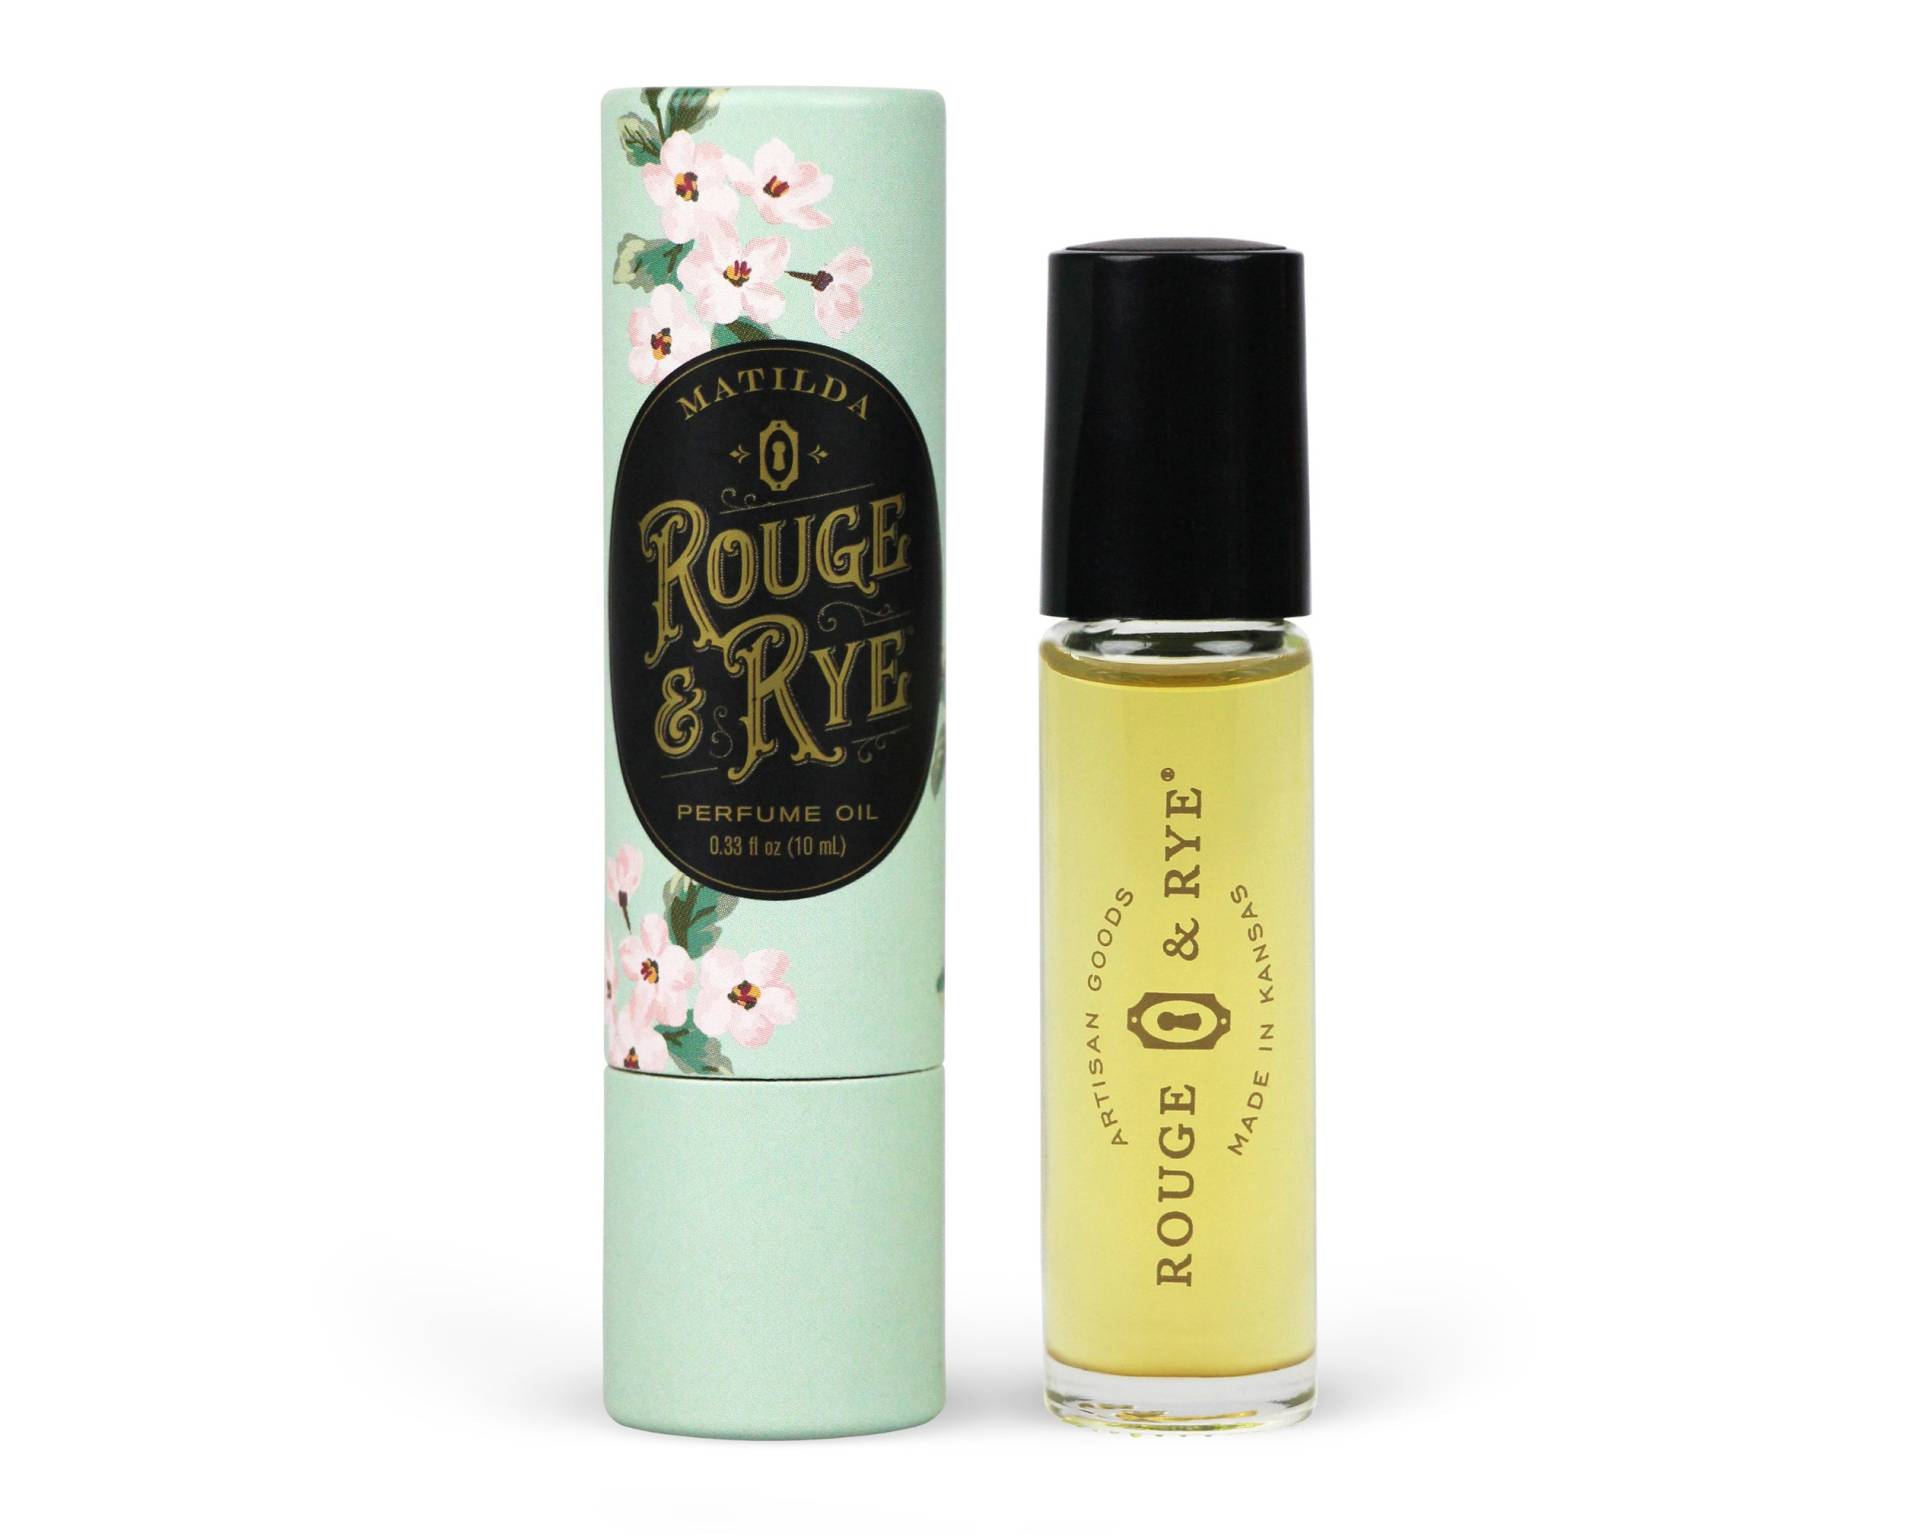 Matilda Parfümöl Lavendel, Rosmarin, Ylang Und Zitrus von RougeAndRye